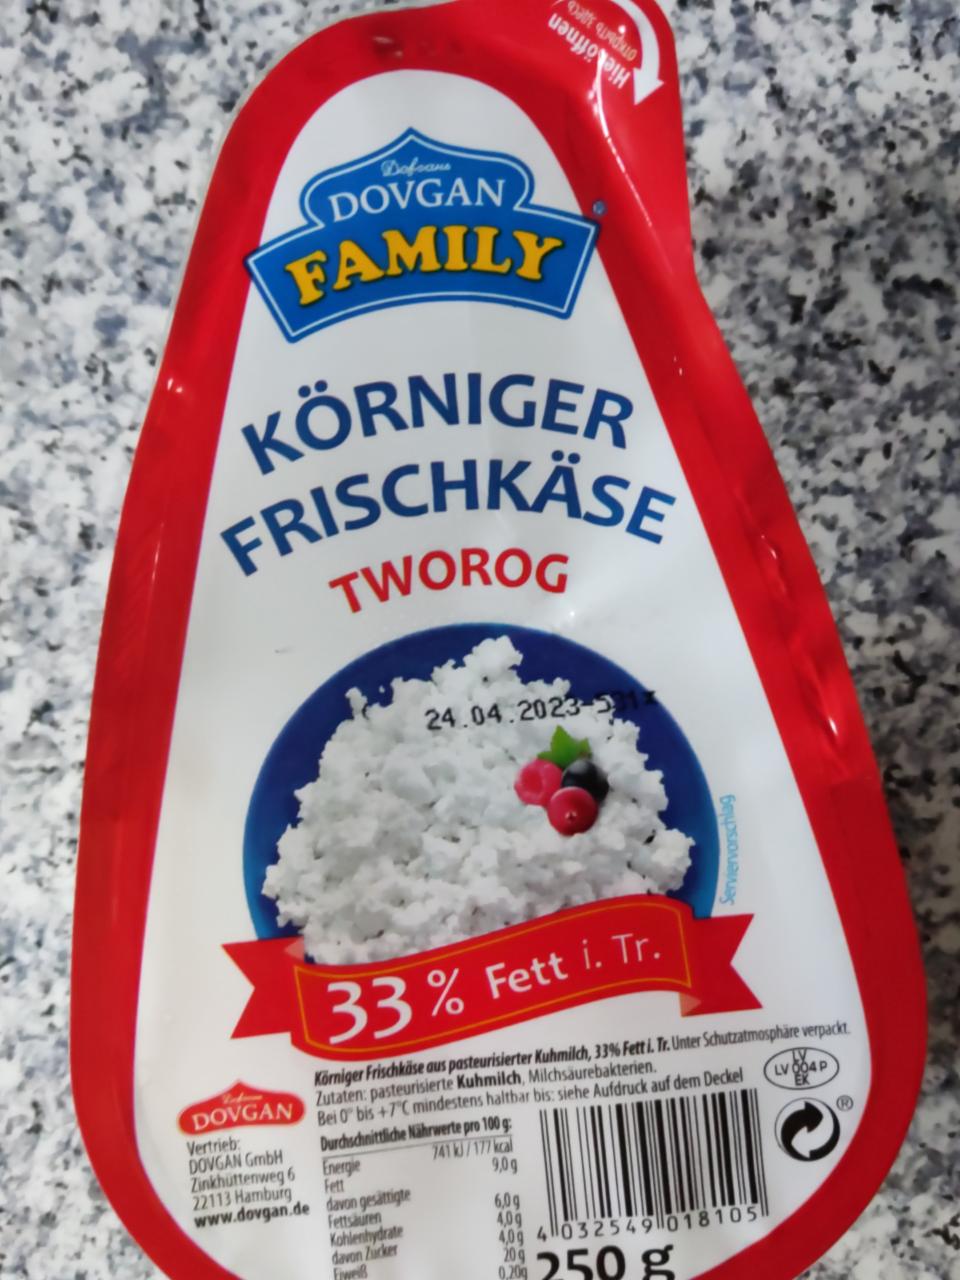 Фото - Körniger Frischkäse tworog 33% fett i. tr. Dovgan Family